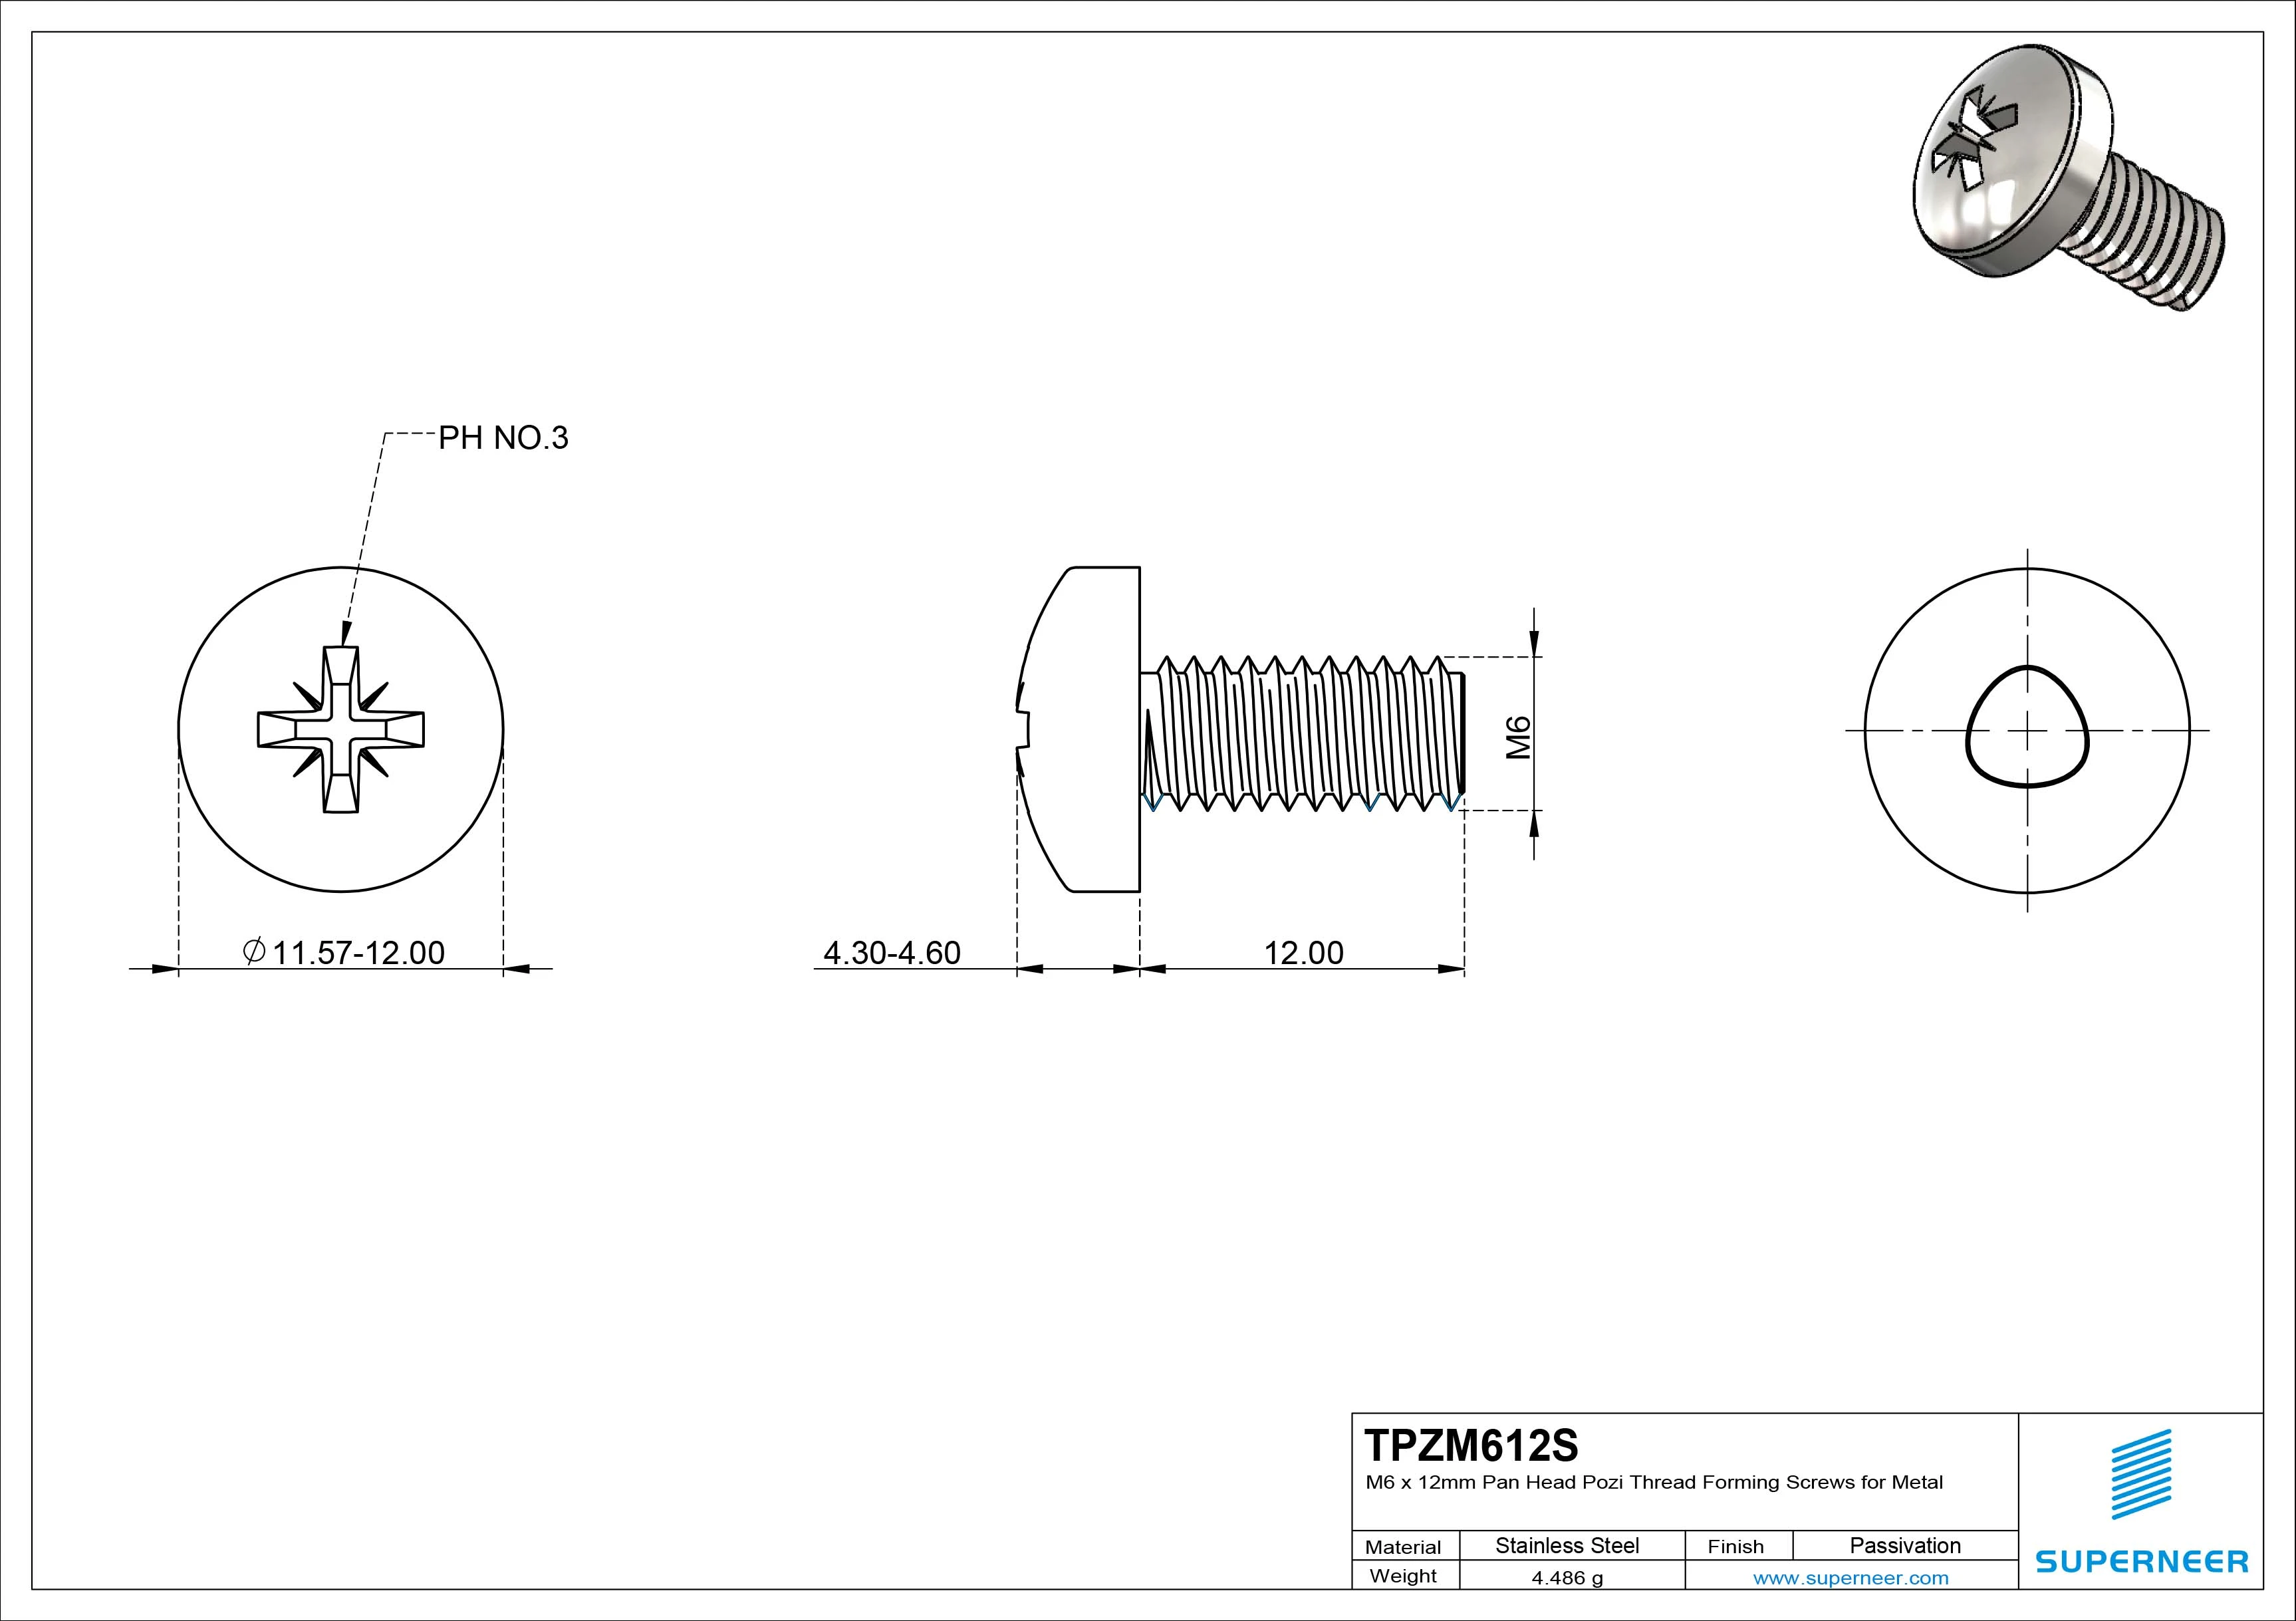 M6 × 12mm Pan Head Pozi Thread Forming Screws for Metal SUS304 Stainless Steel Inox